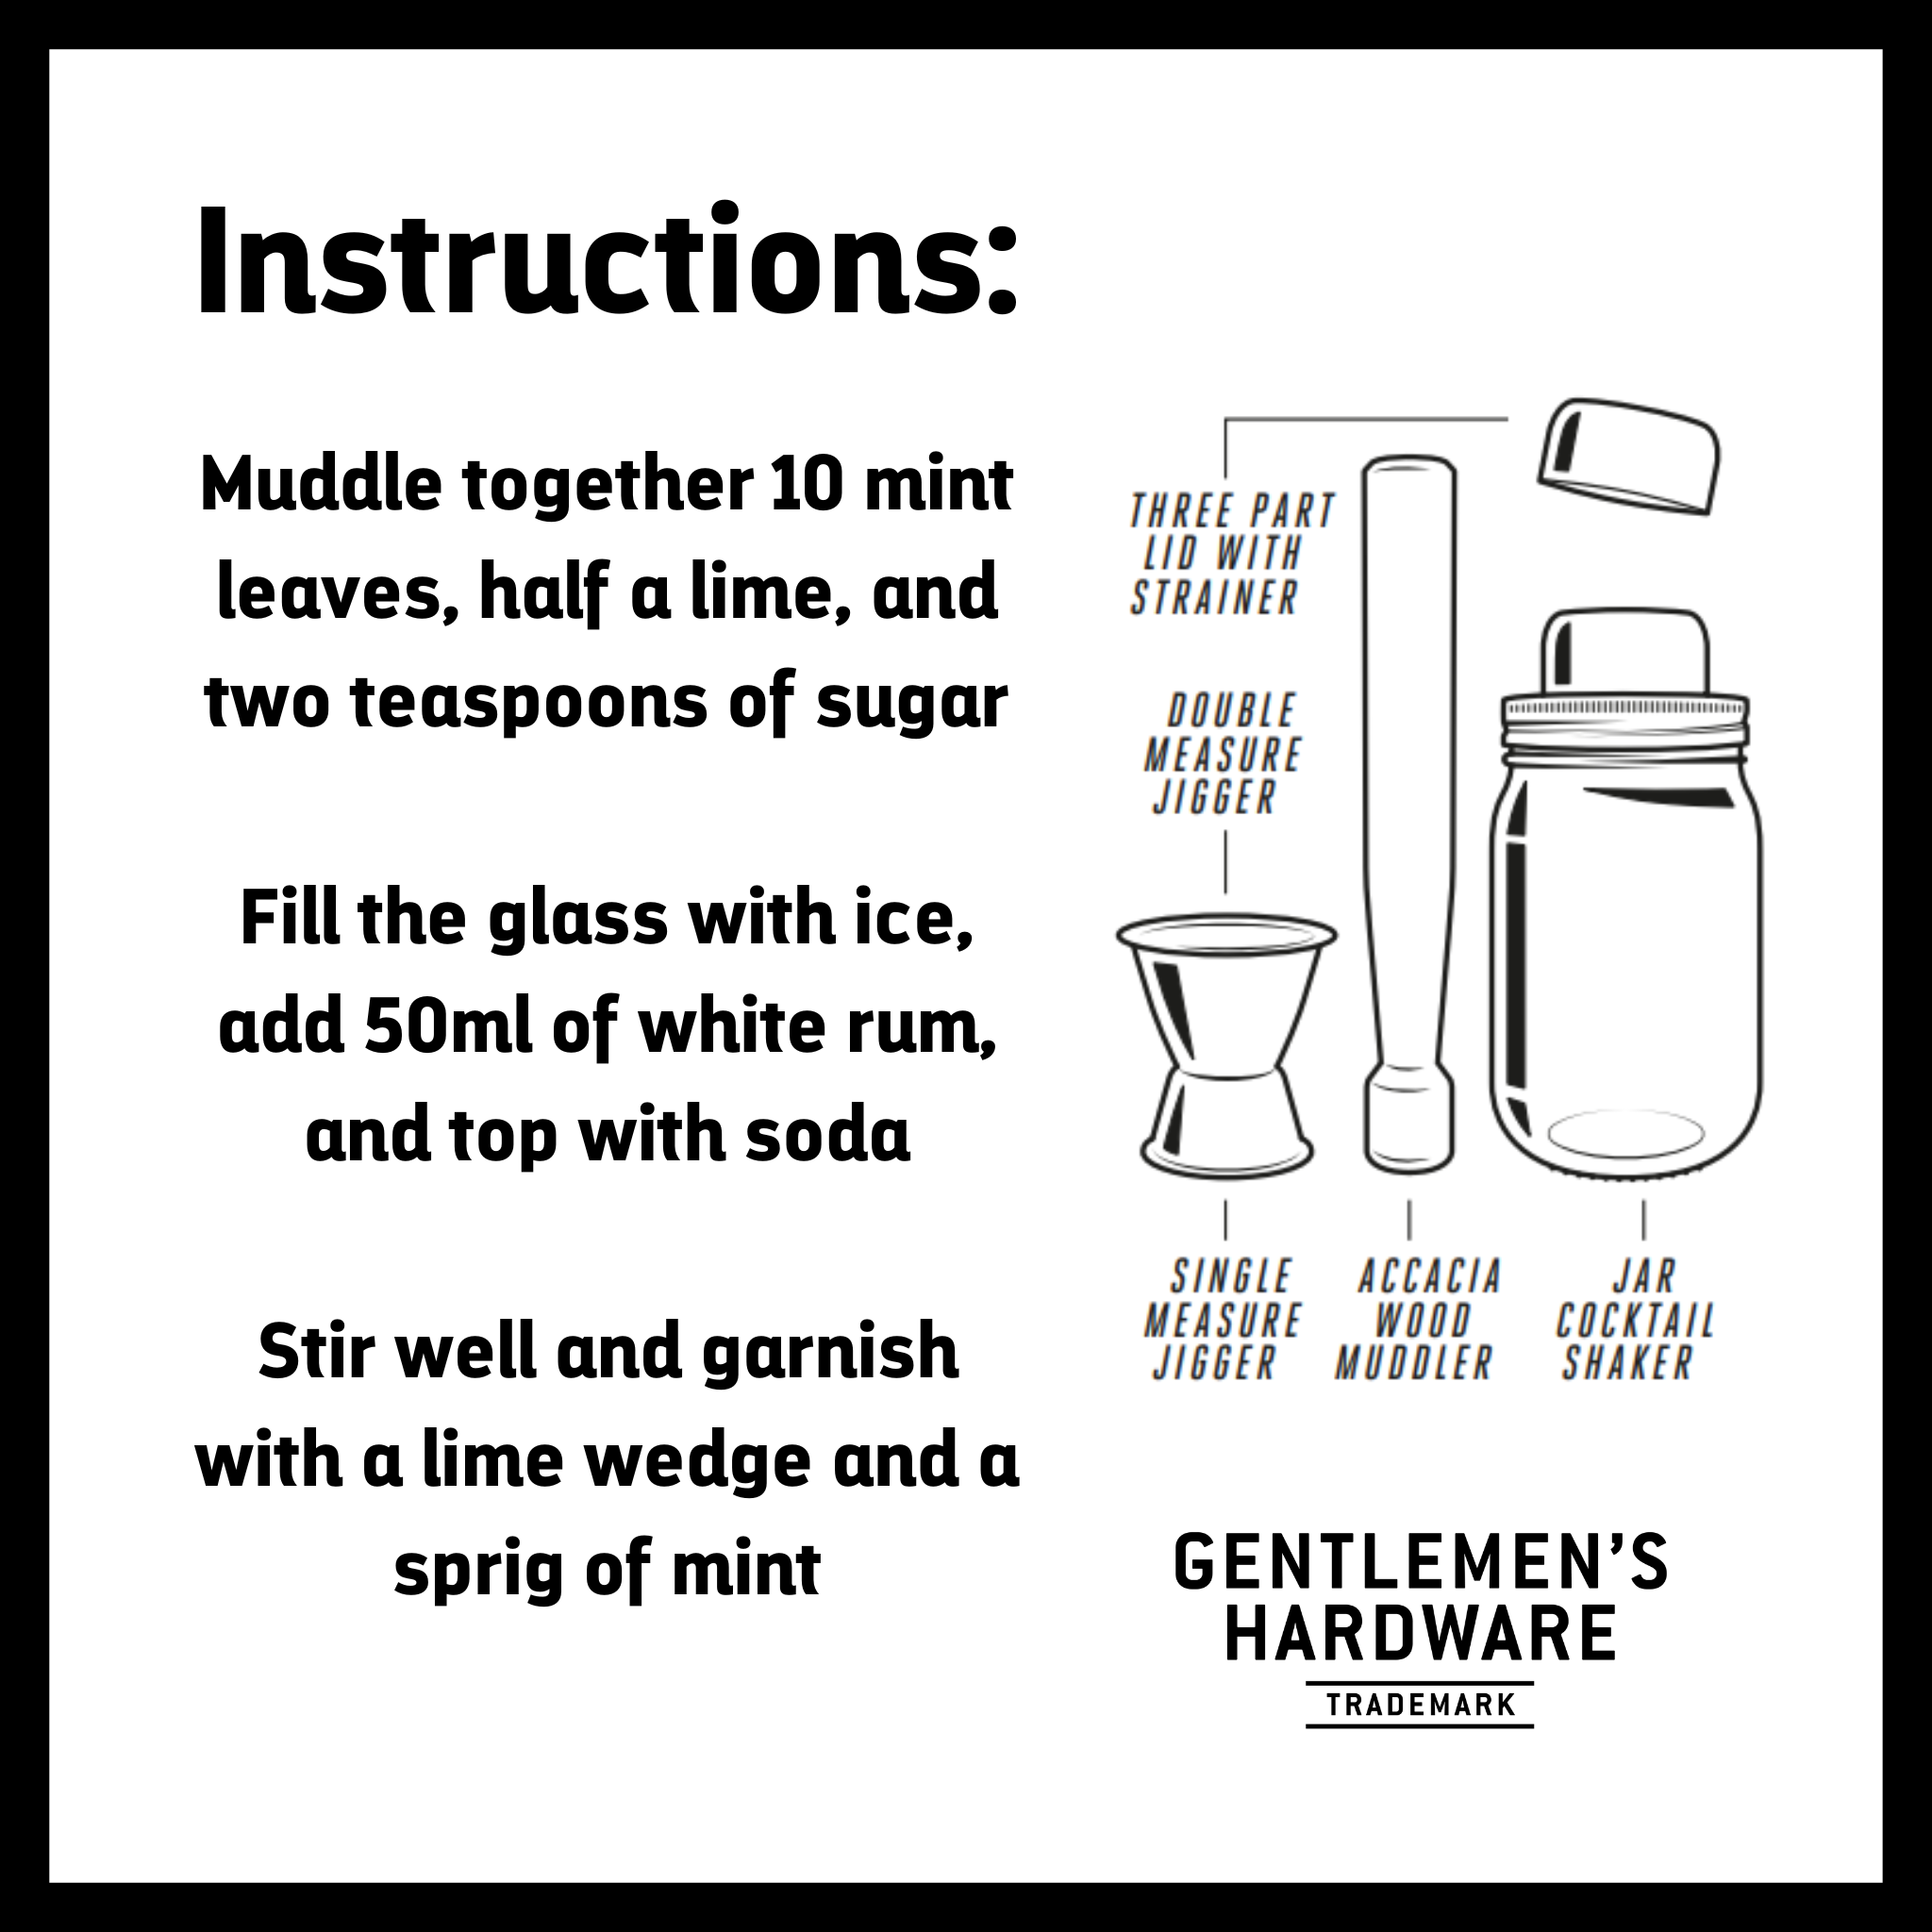 http://gentlemenshardware.com/cdn/shop/products/Muddler-and-Jar-Shaker-Set-Instructions.png?v=1662565019